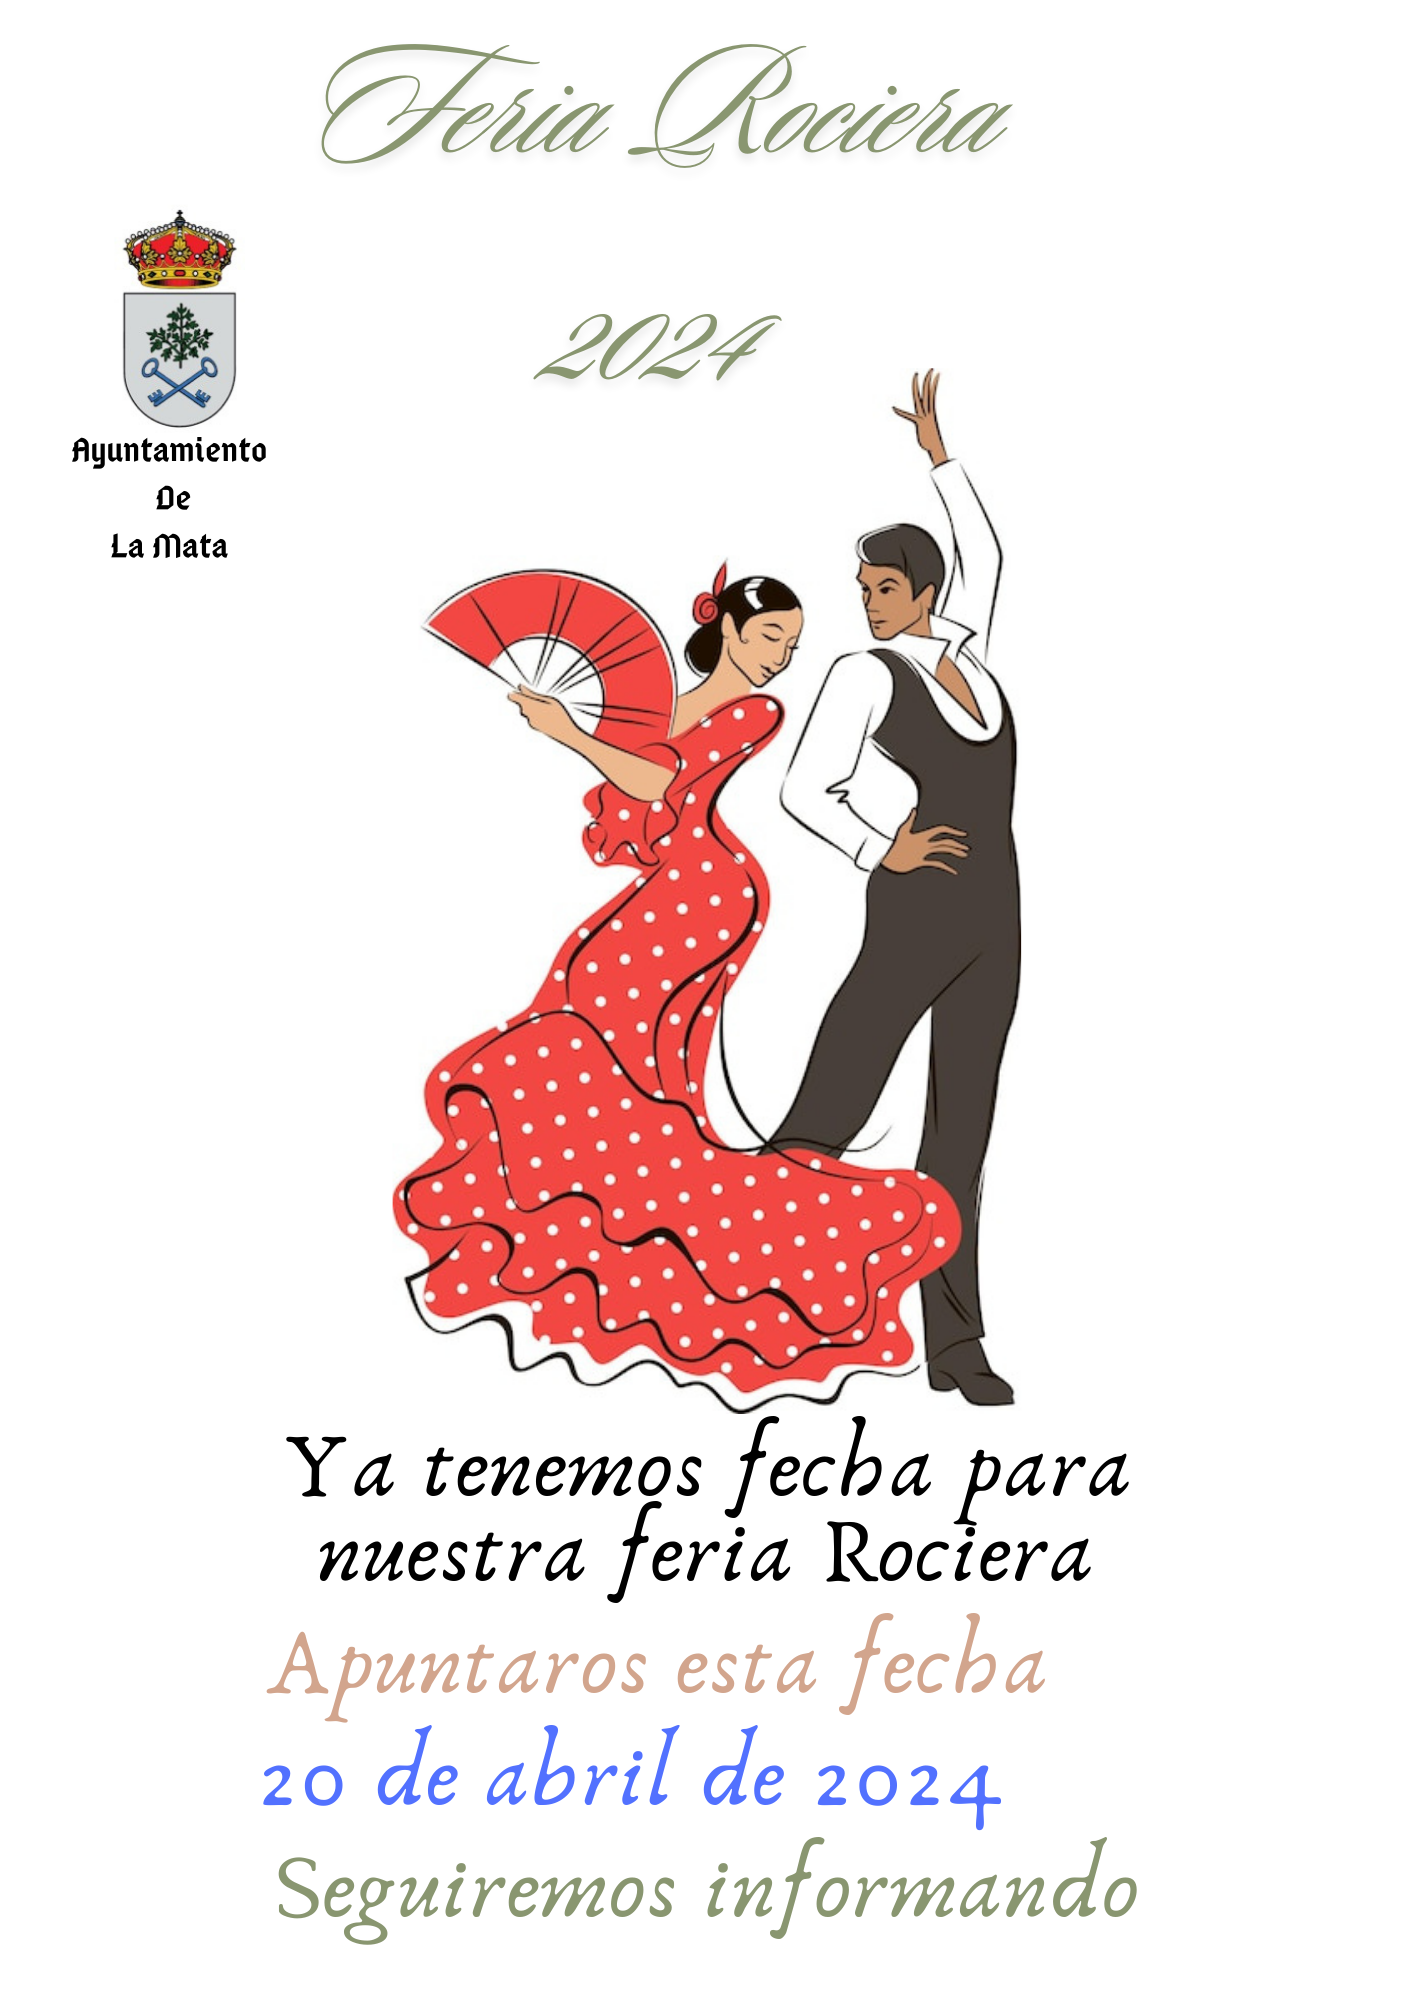 Feria de Abril en Madrid. Cante y baile hasta que el cuerpo aguante.